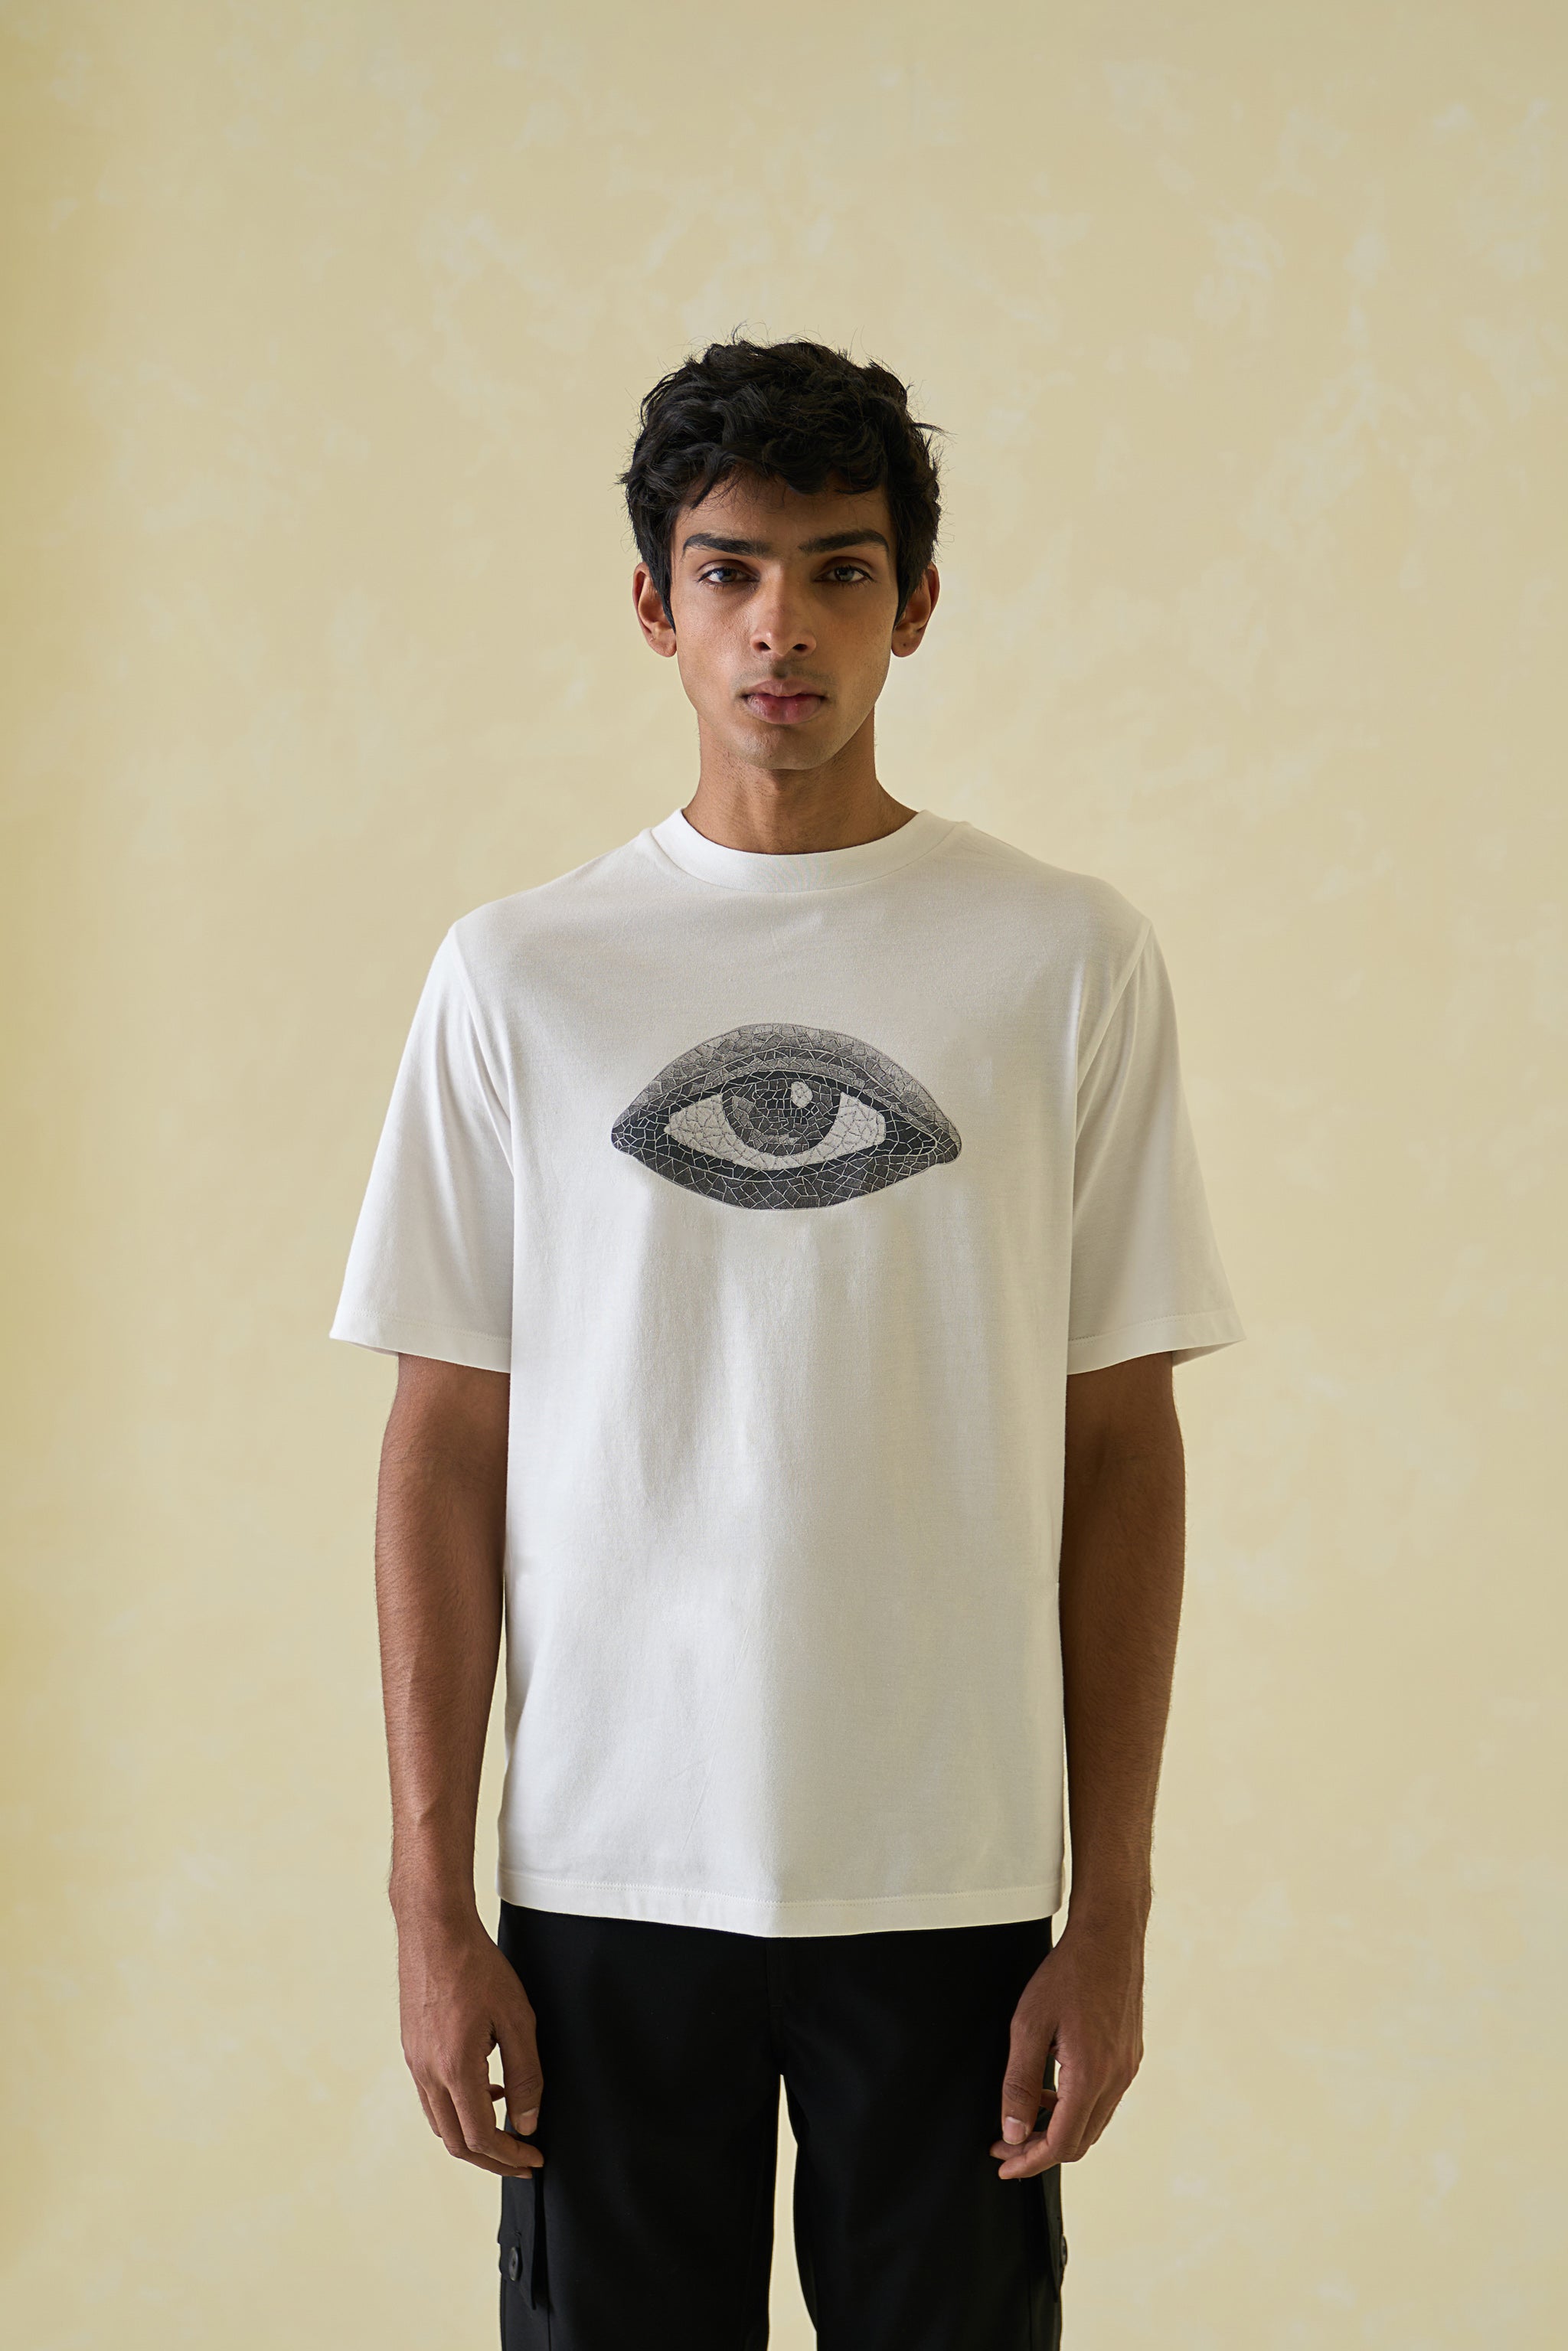 Mosaic Eye T-Shirt